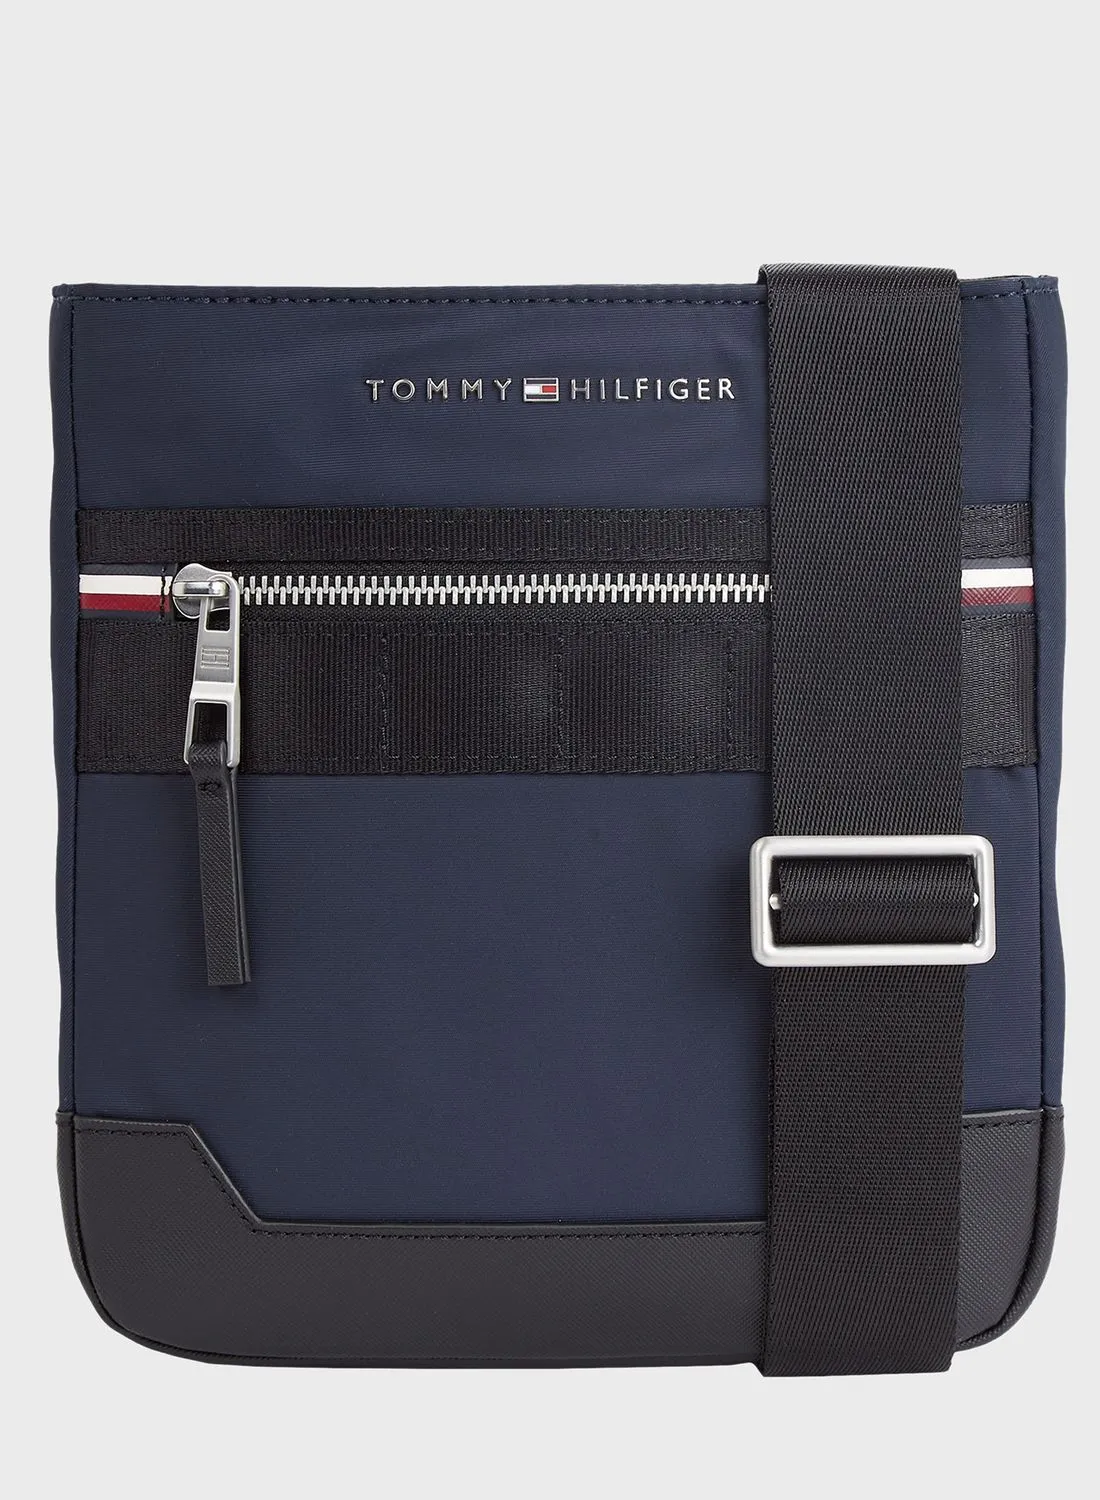 حقيبة كروس بشعار تومي هيلفيغر